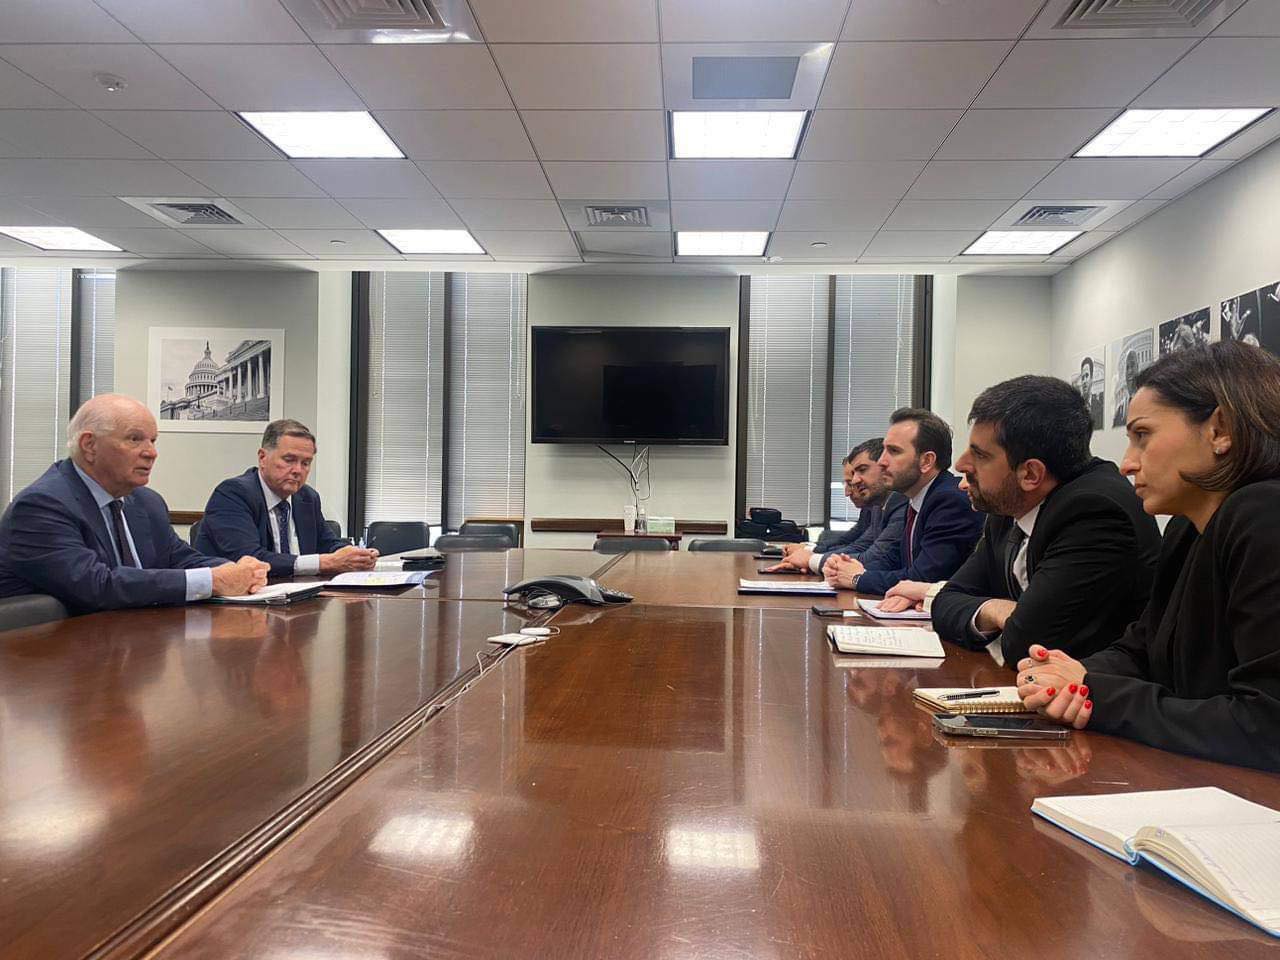 ԱԺ Հայաստան-ԱՄՆ բարեկամական խմբի անդամները հանդիպել են ԱՄՆ Սենատի արտաքին հարաբերությունների հանձնաժողովի նախագահին